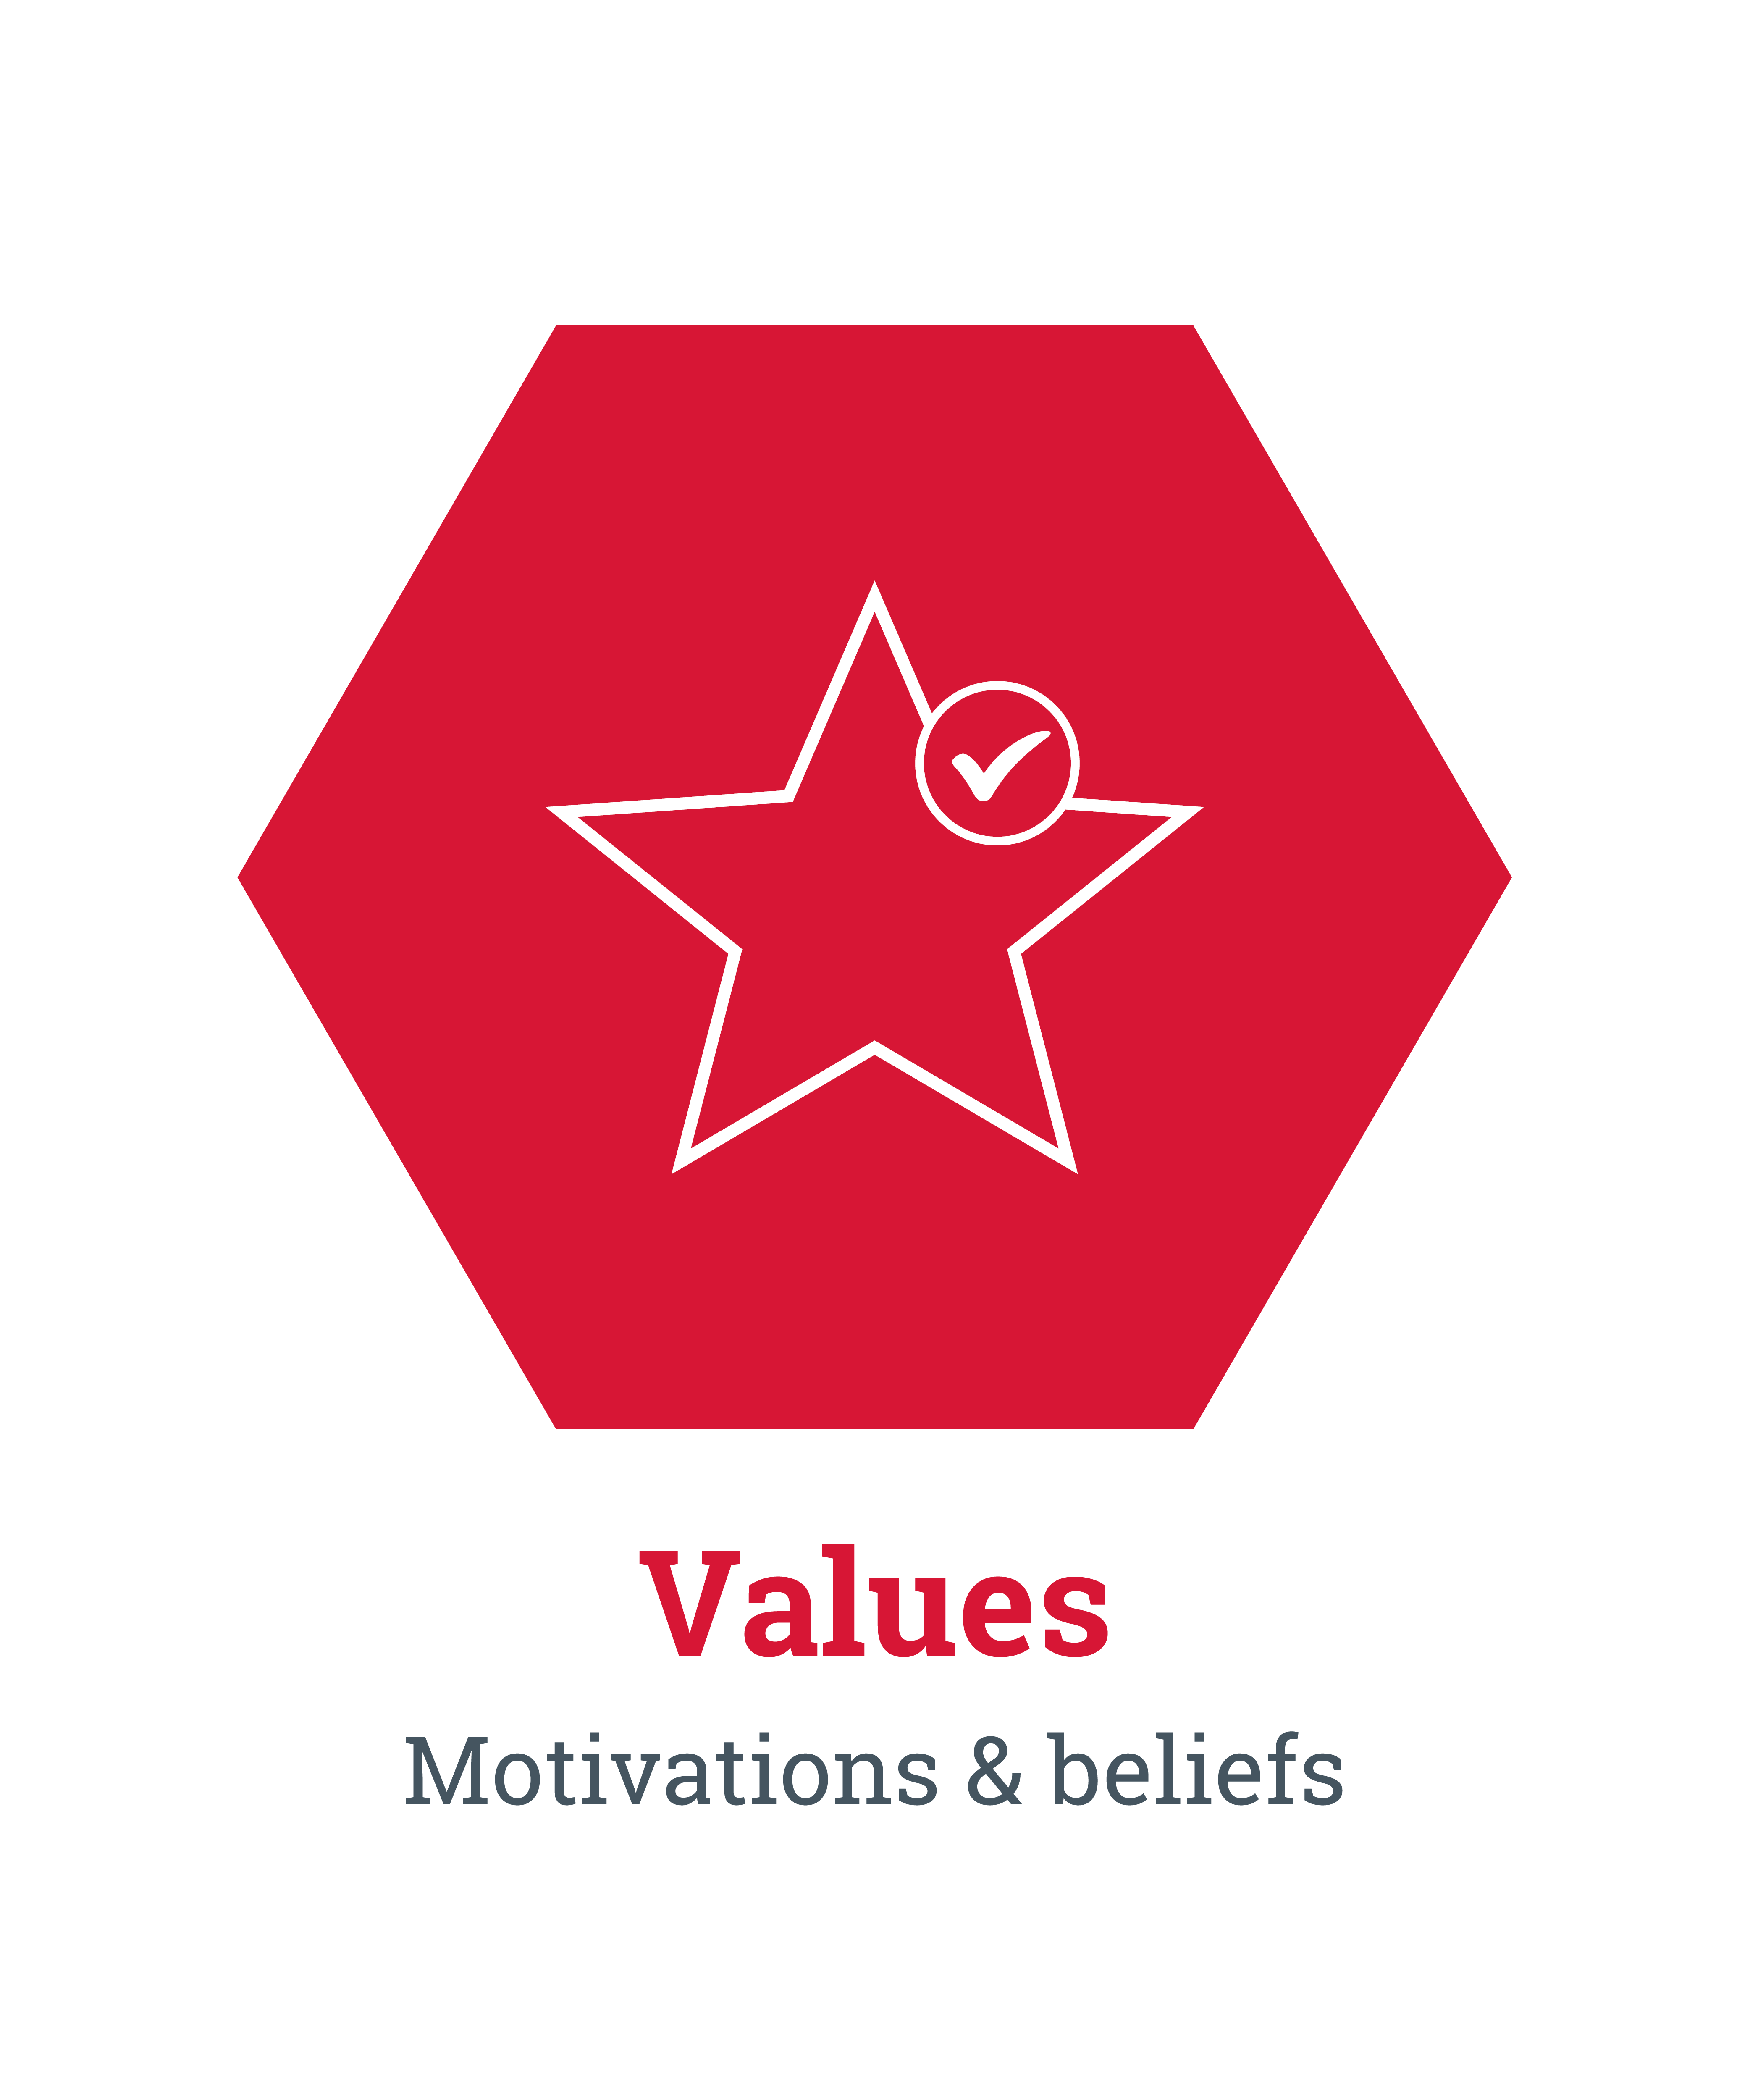 Values. Motivations & beliefs